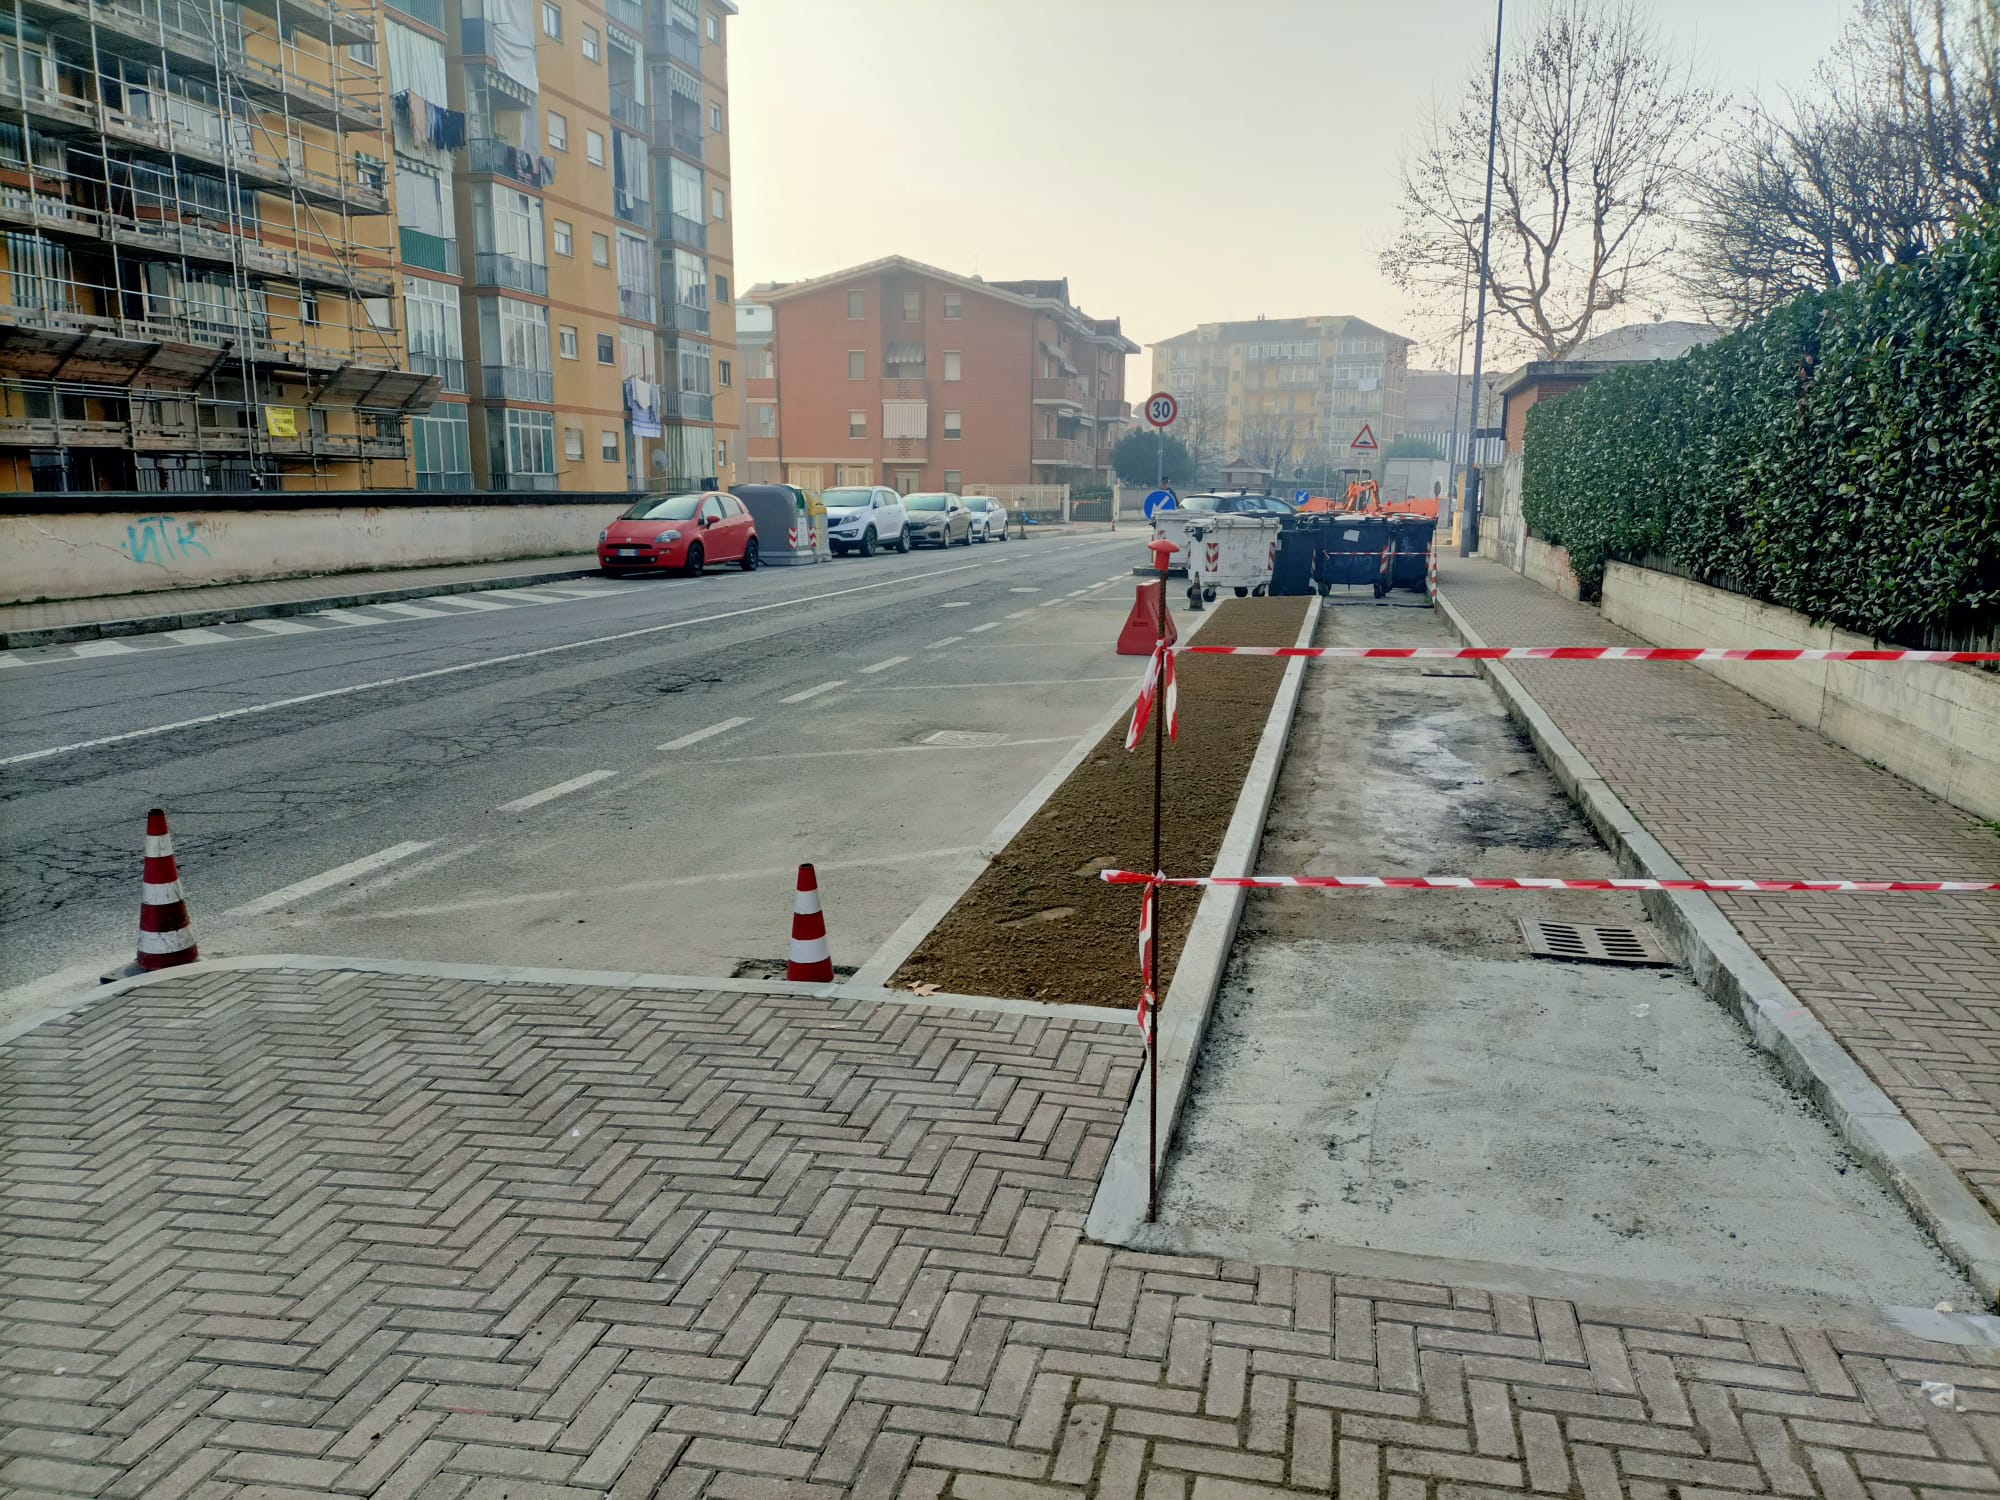 NICHELINO – I lavori della pista ciclabile arrivano in via San Matteo: caos e disagi alla circolazione